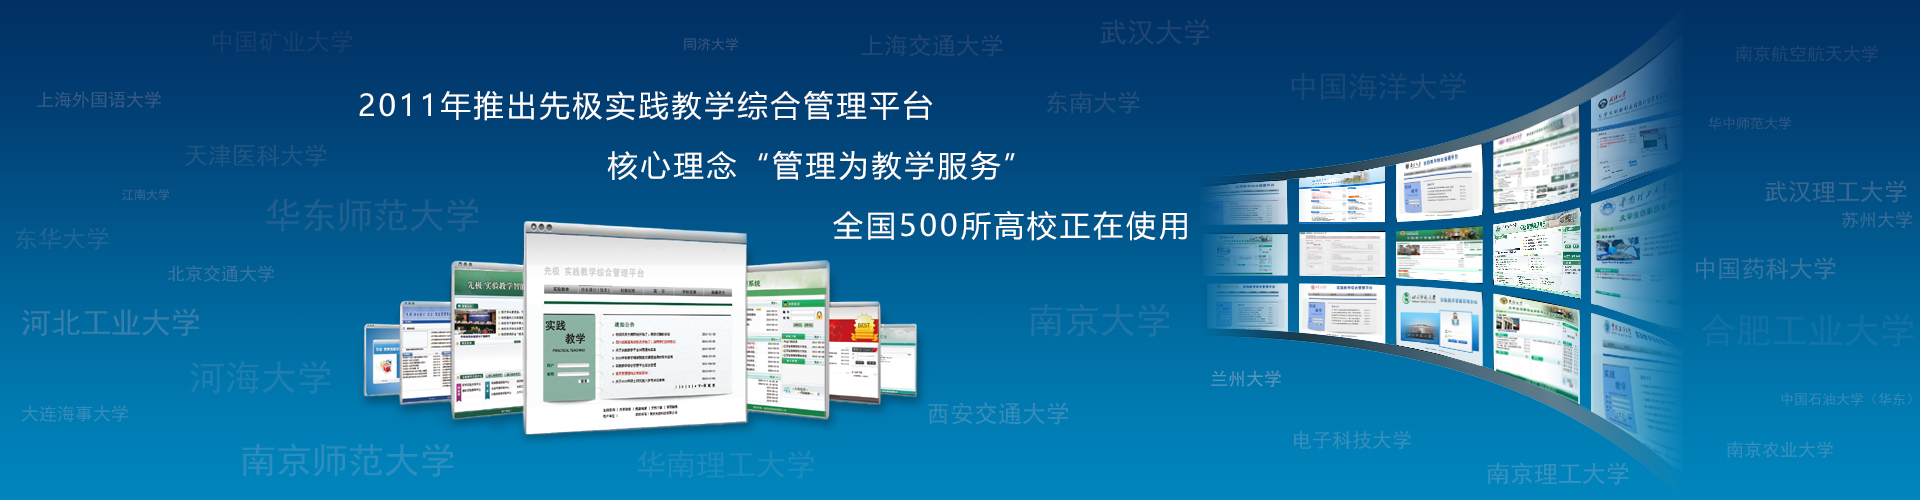 关于当前产品49c彩票登陆·(中国)官方网站的成功案例等相关图片